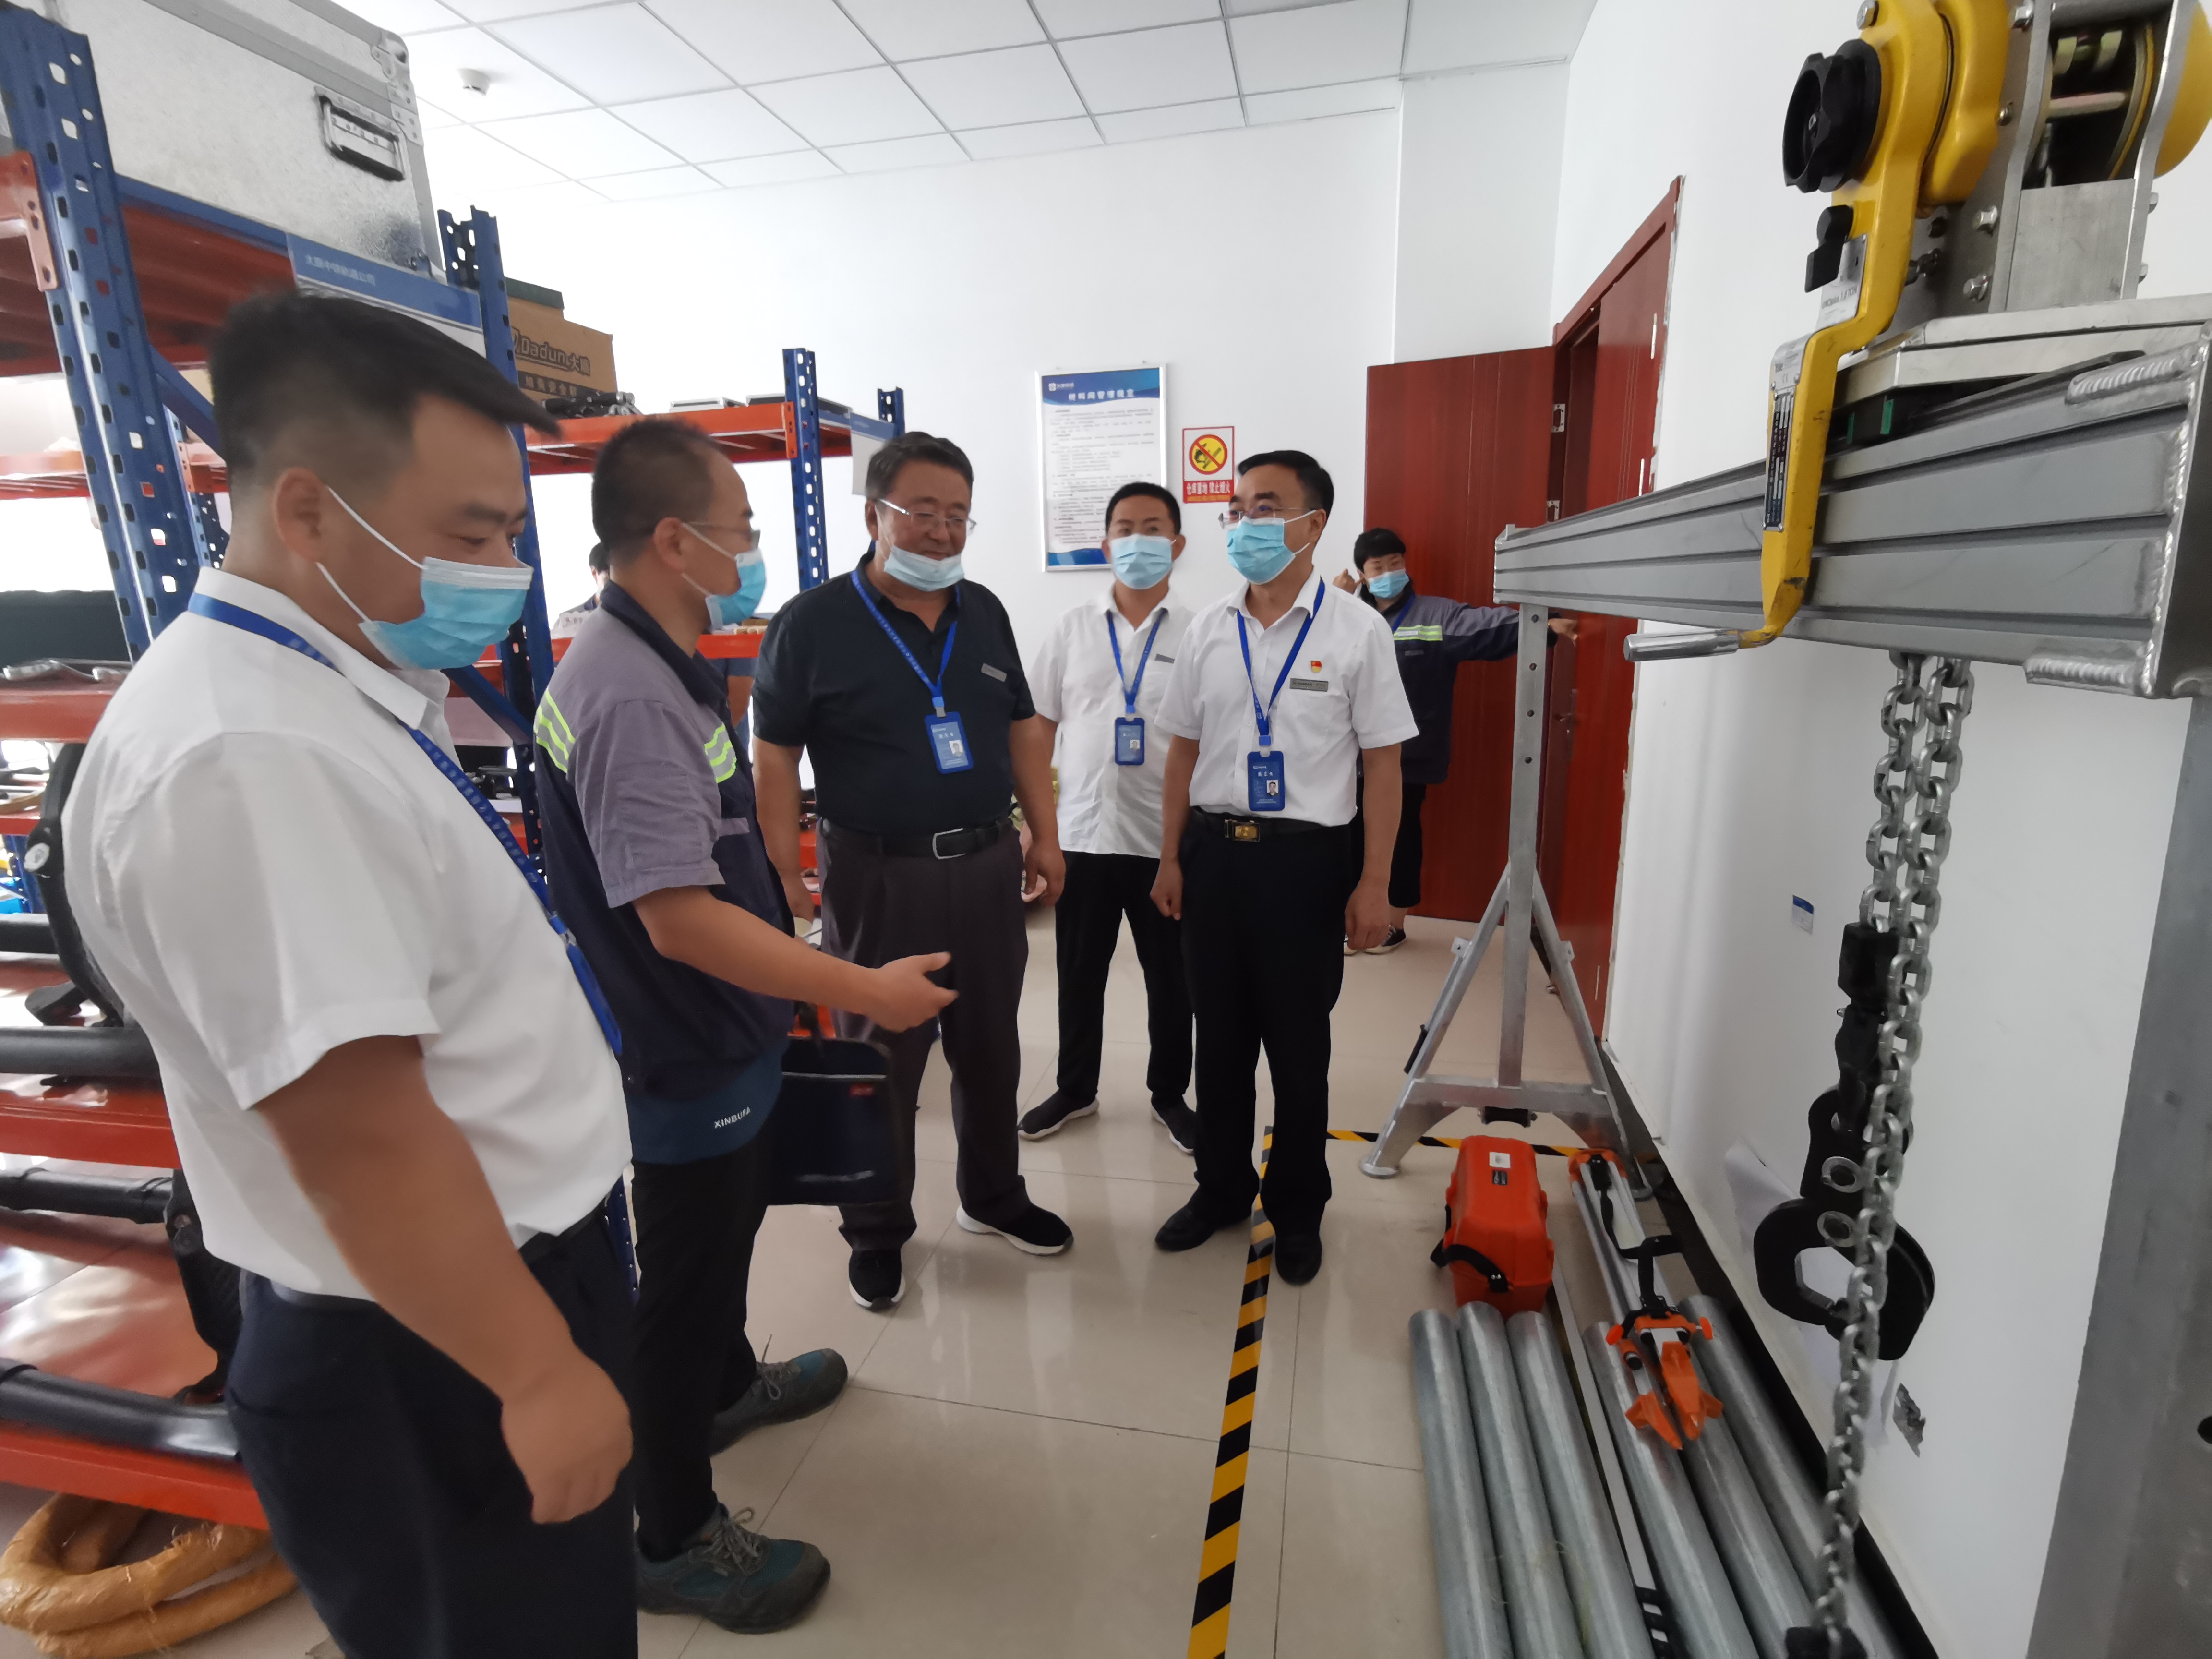 中铁电气化局北京电化公司对太原地铁2号维管项目进行安全大检查